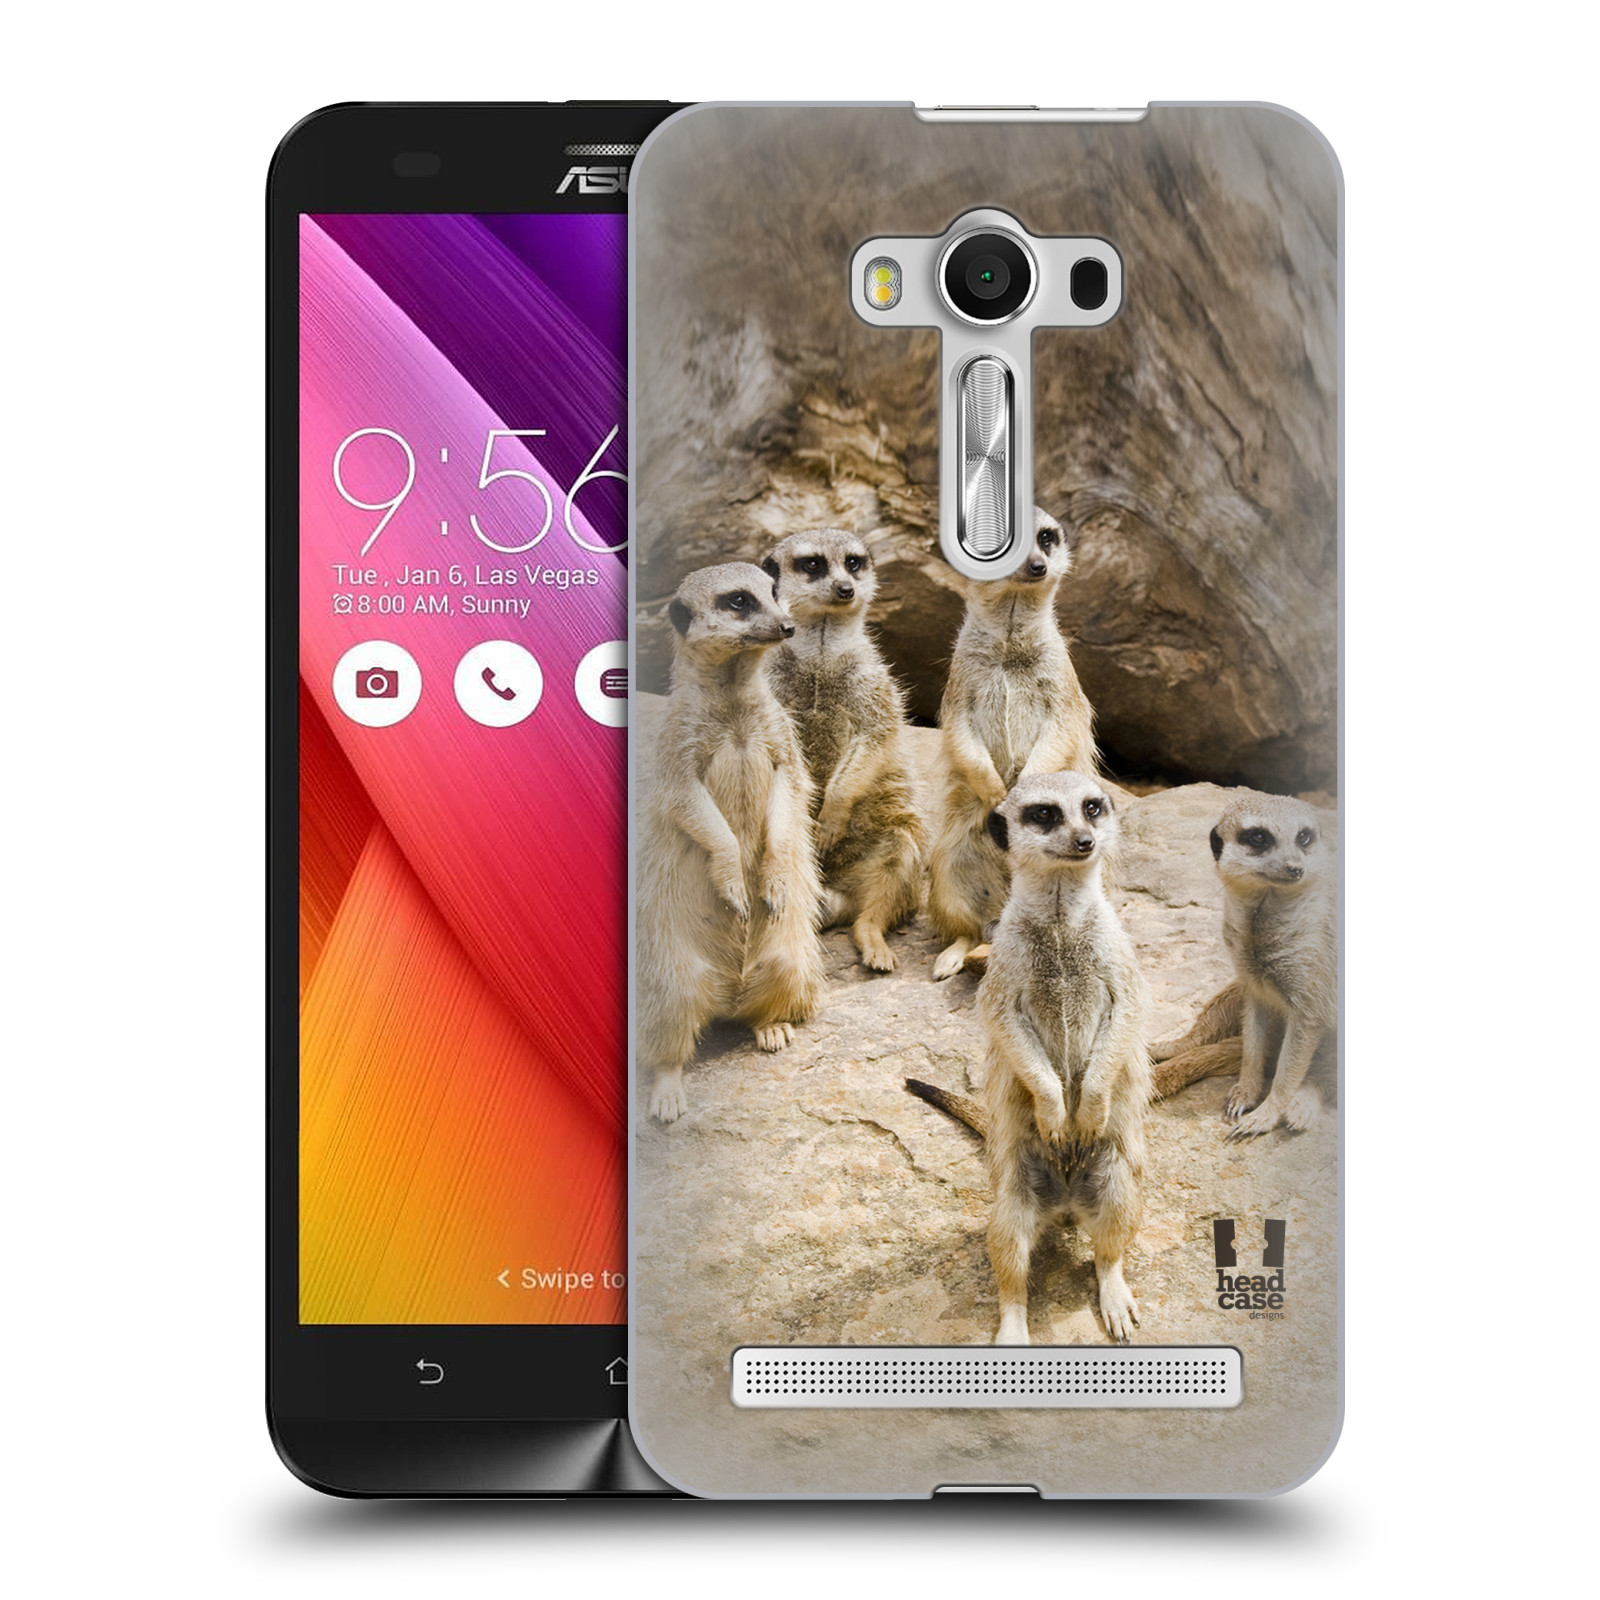 HEAD CASE plastový obal na mobil Asus Zenfone 2 LASER (5,5 displej ZE550KL) vzor Divočina, Divoký život a zvířata foto SURIKATA